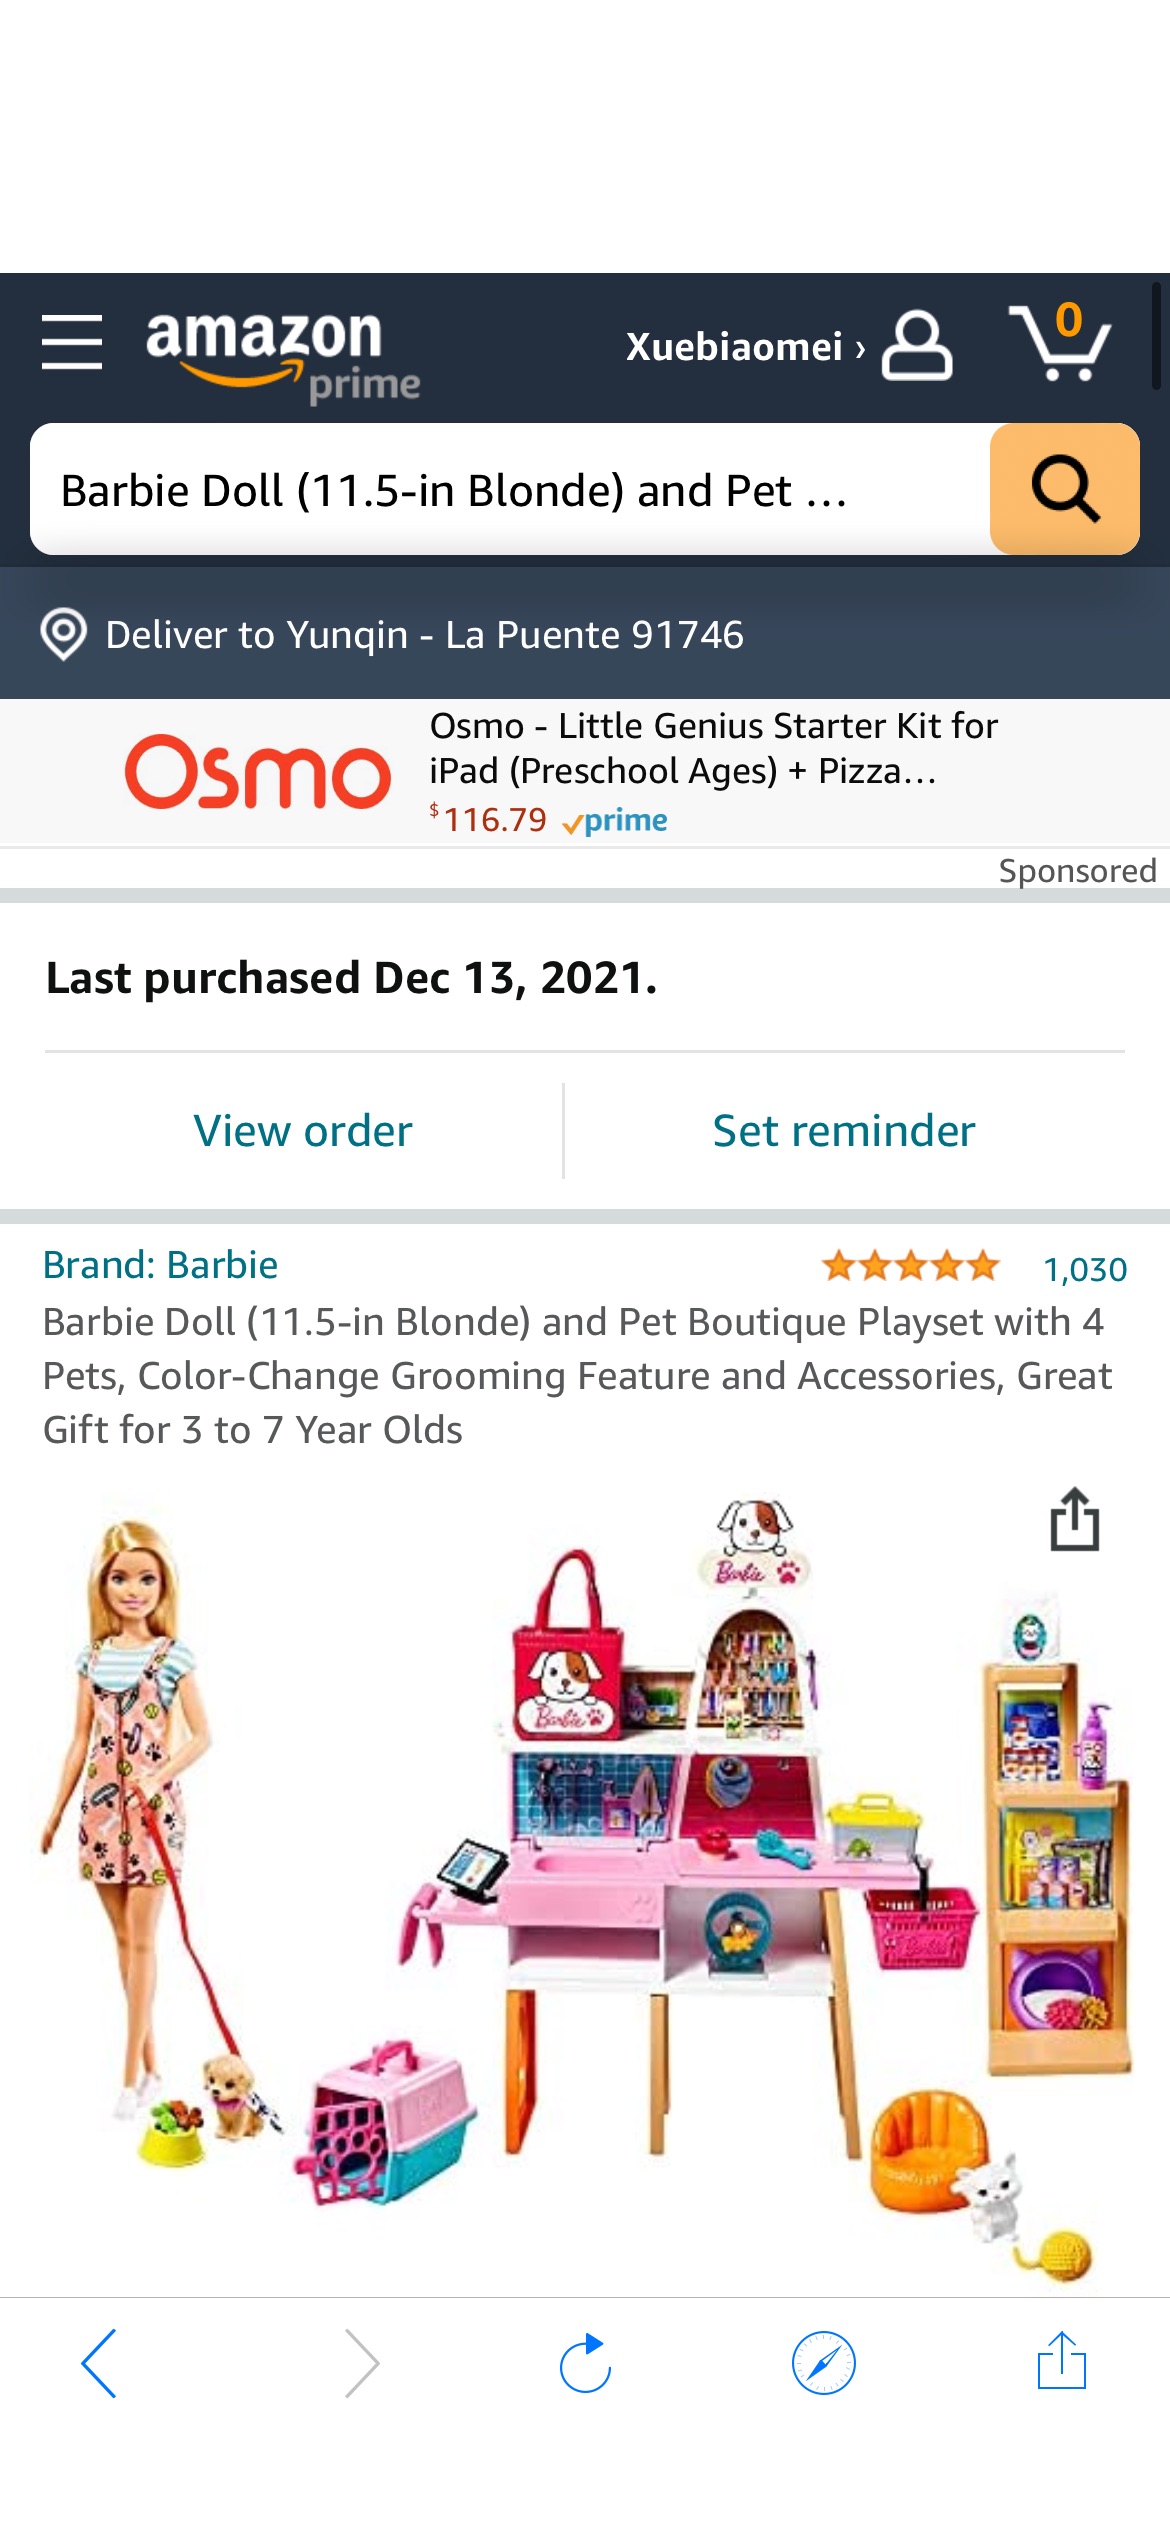 芭比娃娃和宠物套装
Barbie Doll (11.5-in Blonde) and Pet Boutique Playset with 4 Pets, Color-Change Grooming Feature and Accessories, Great Gift for 3 to 7 Year Olds